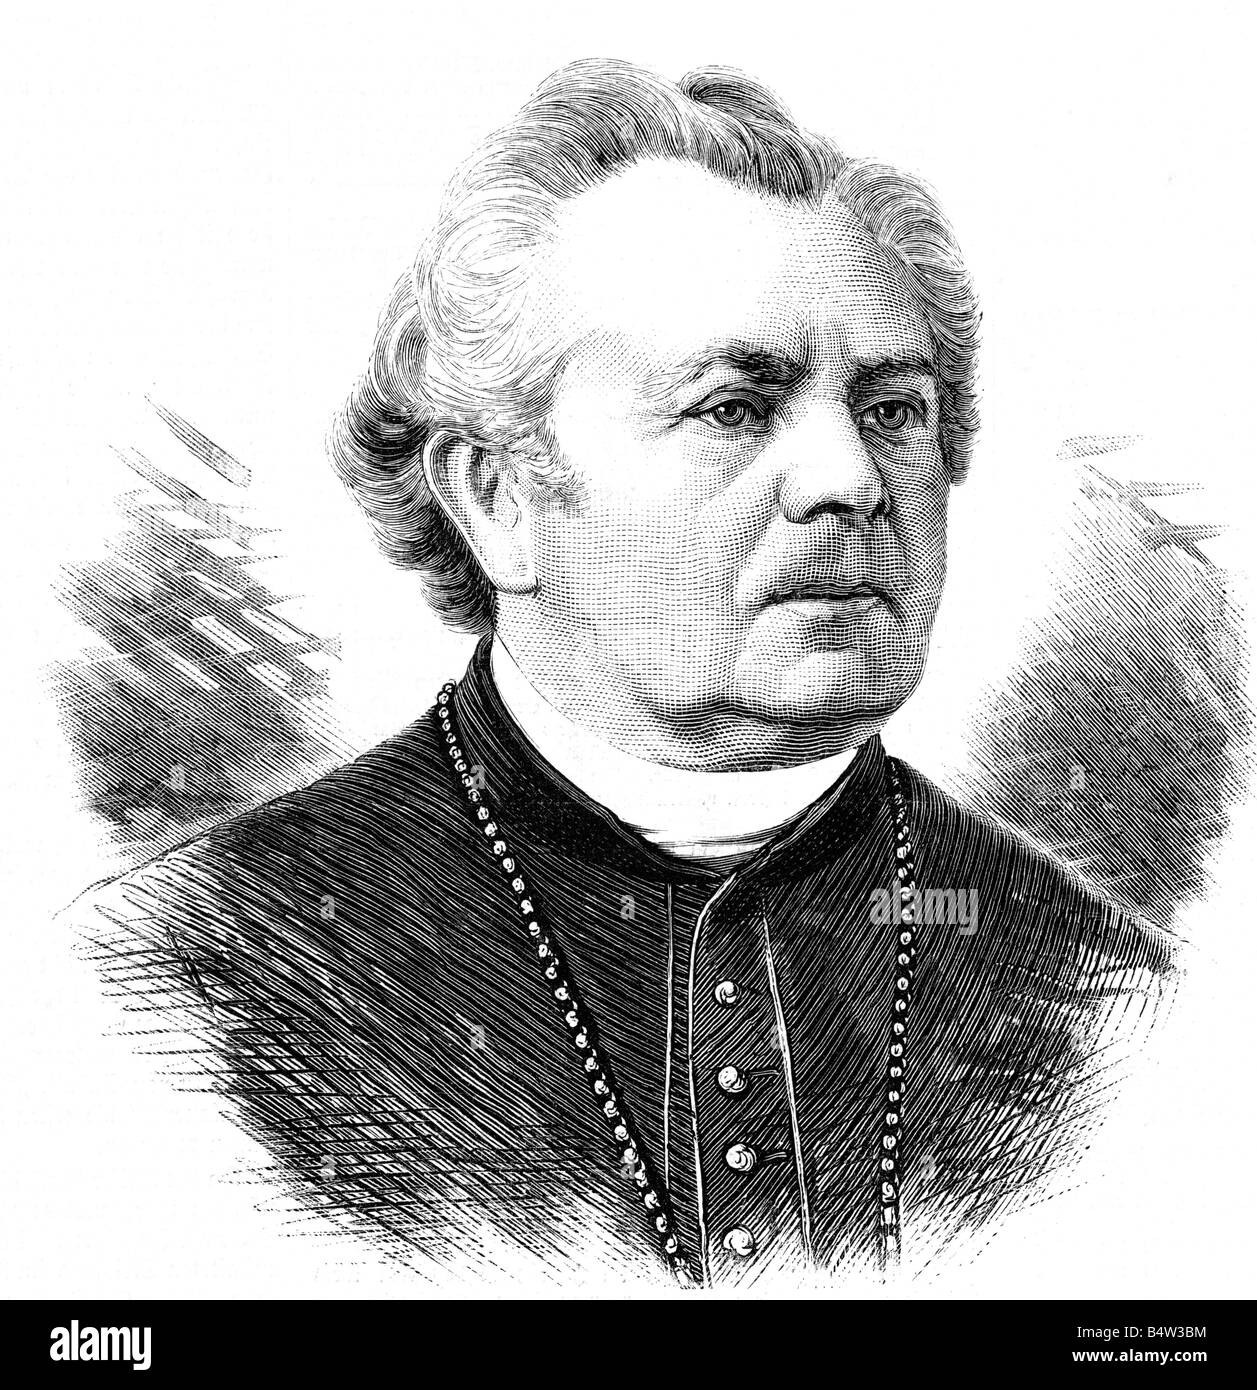 Foerster, Heinrich, 24.11.1799 - 20.10.1881, obispo de Breslau, retrato, grabado en madera, Foto de stock